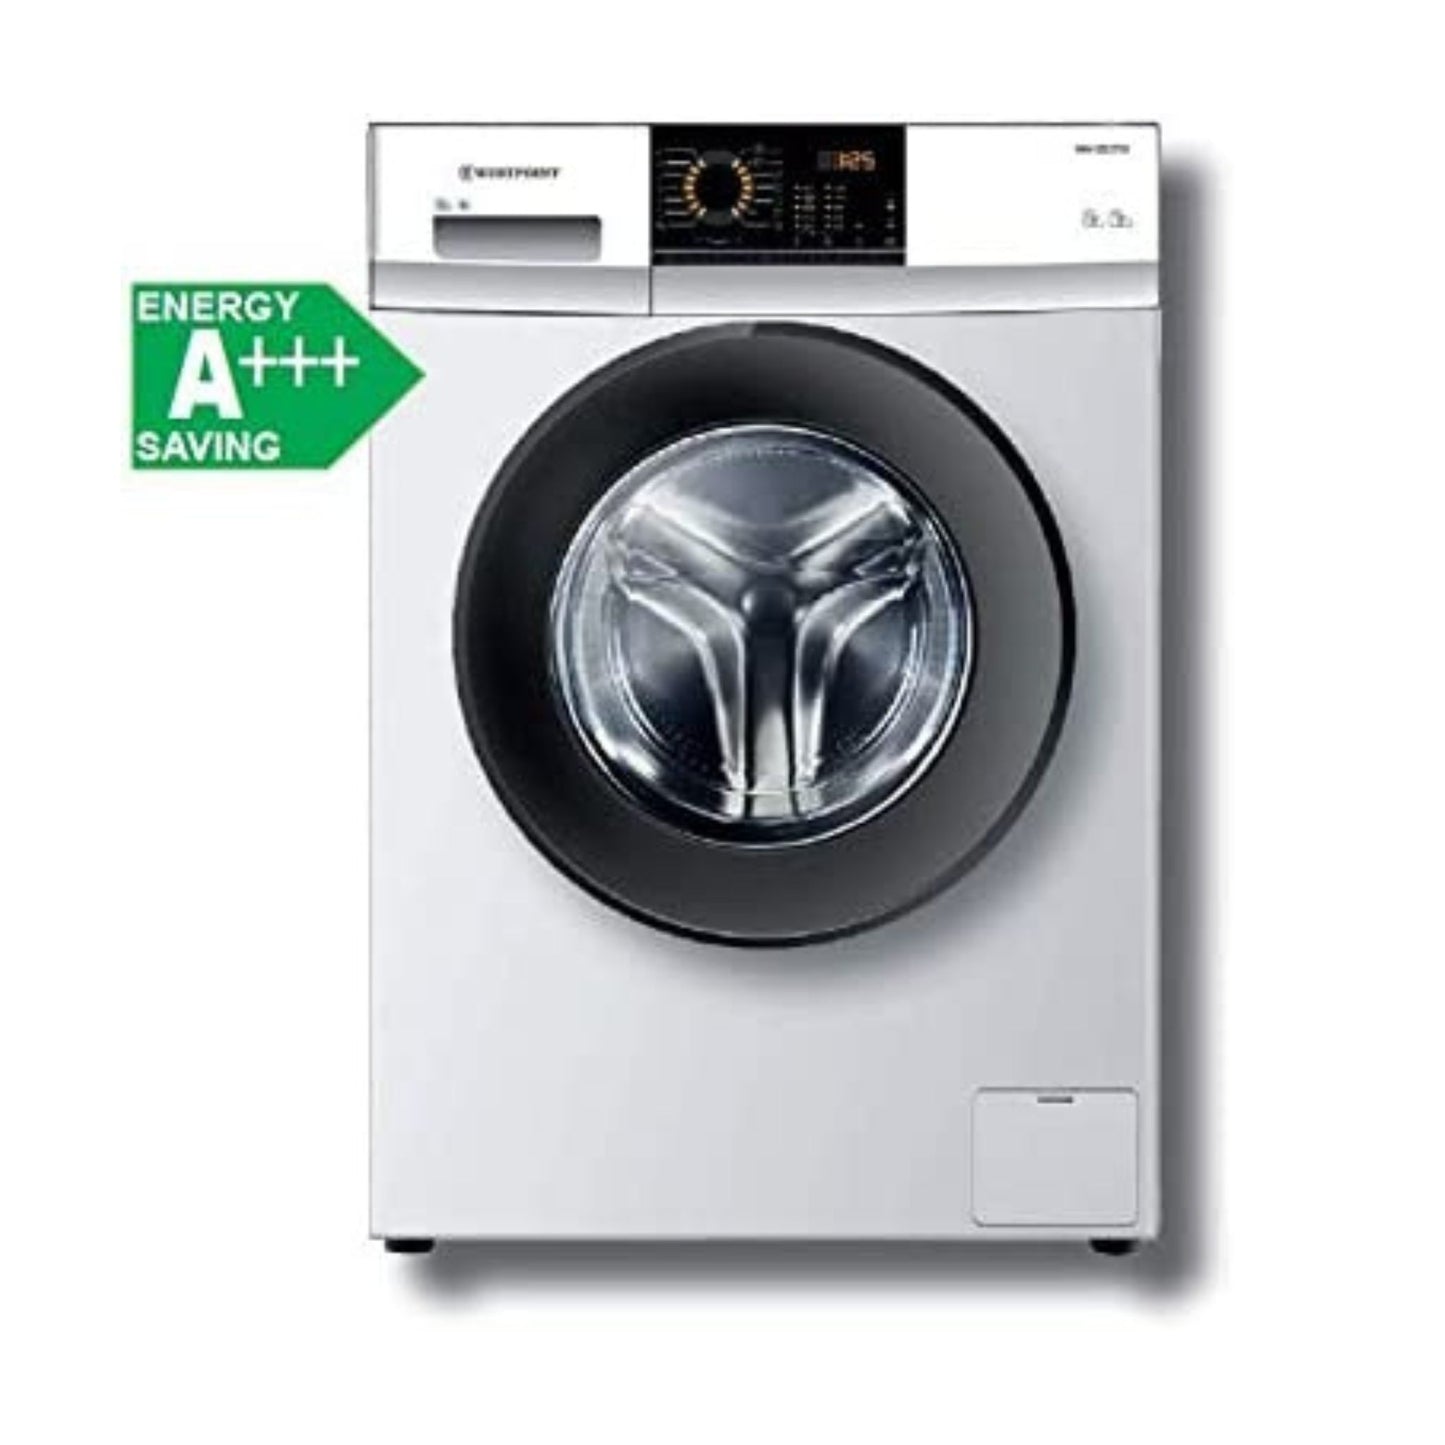 Westpoint 7KG Fully Automatic Washing Machine, WMX 71219.E